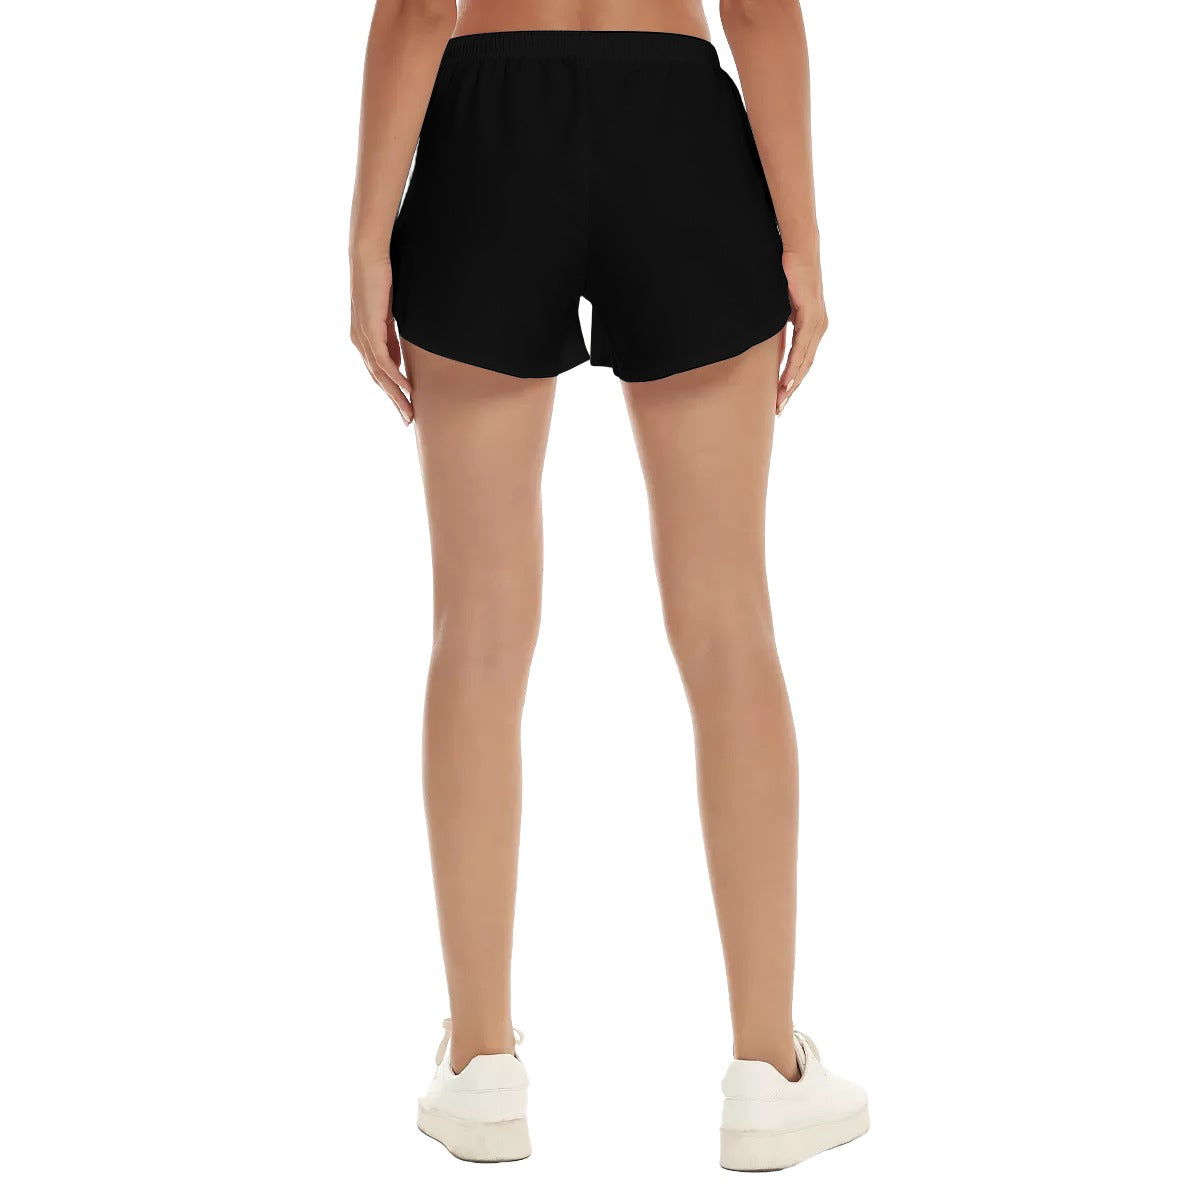 Beba Sports Shorts With Pockets